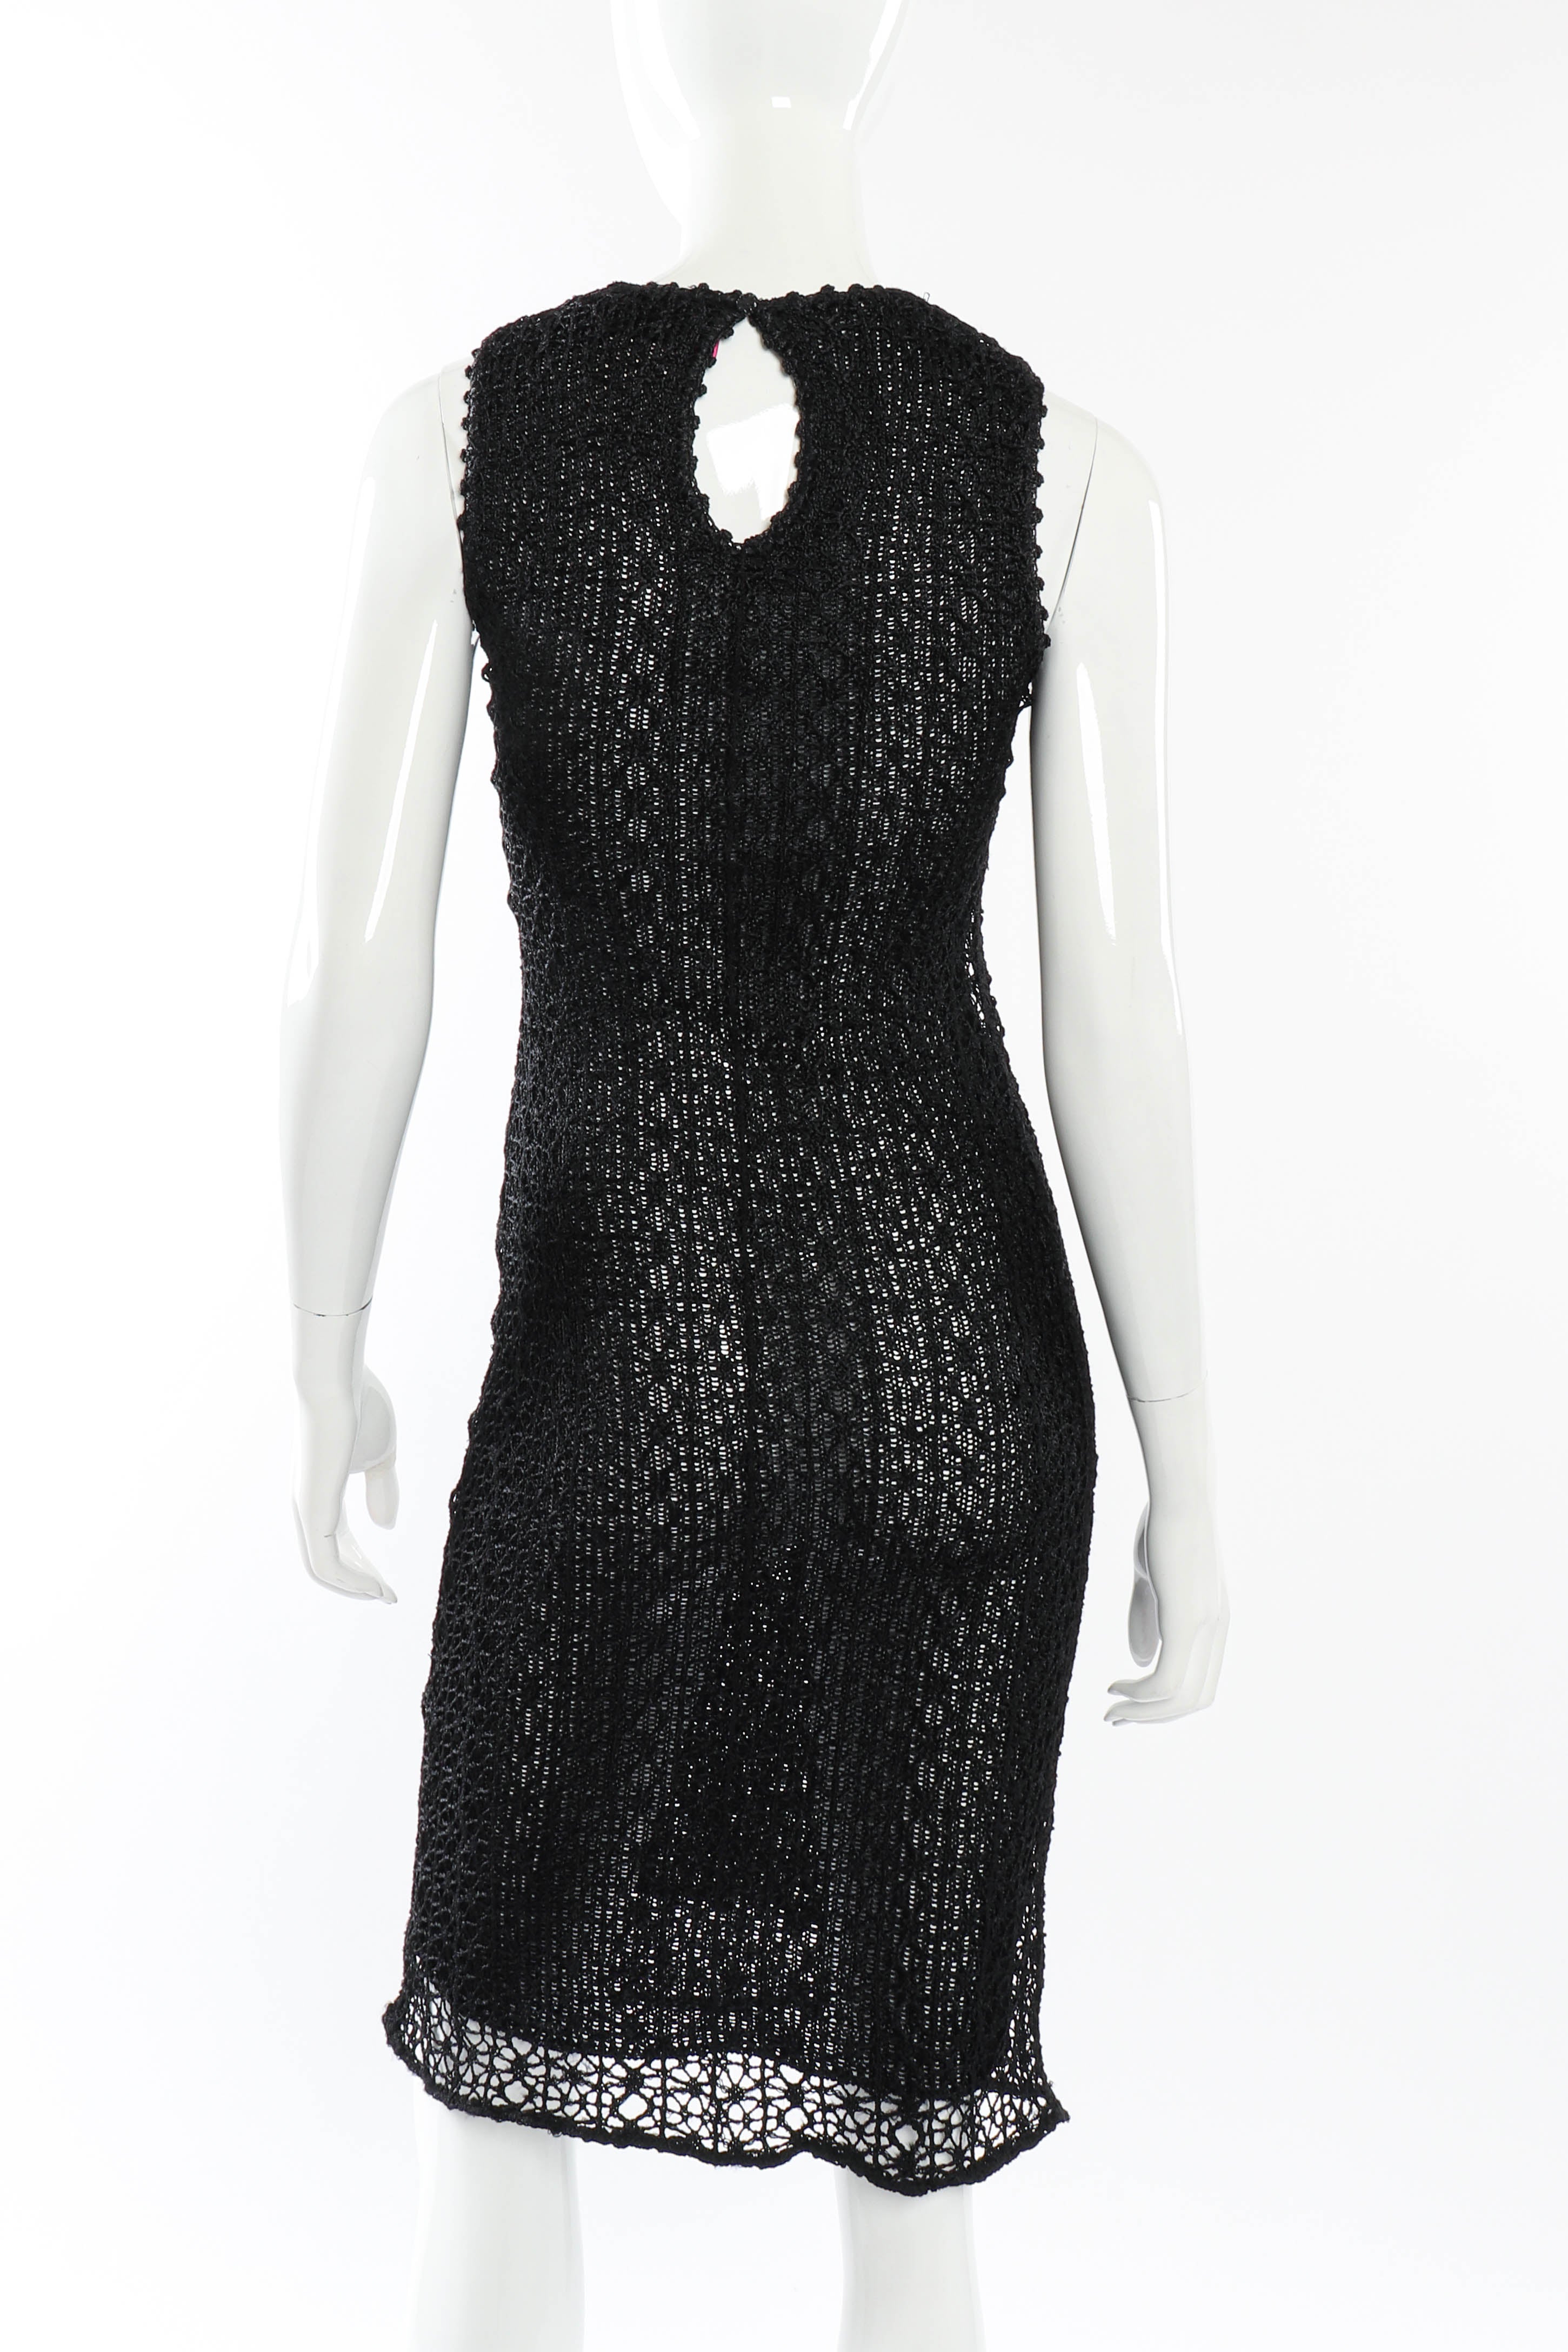 Vintage Christian Lacroix Open Knit Crochet Dress back on mannequin @recessla